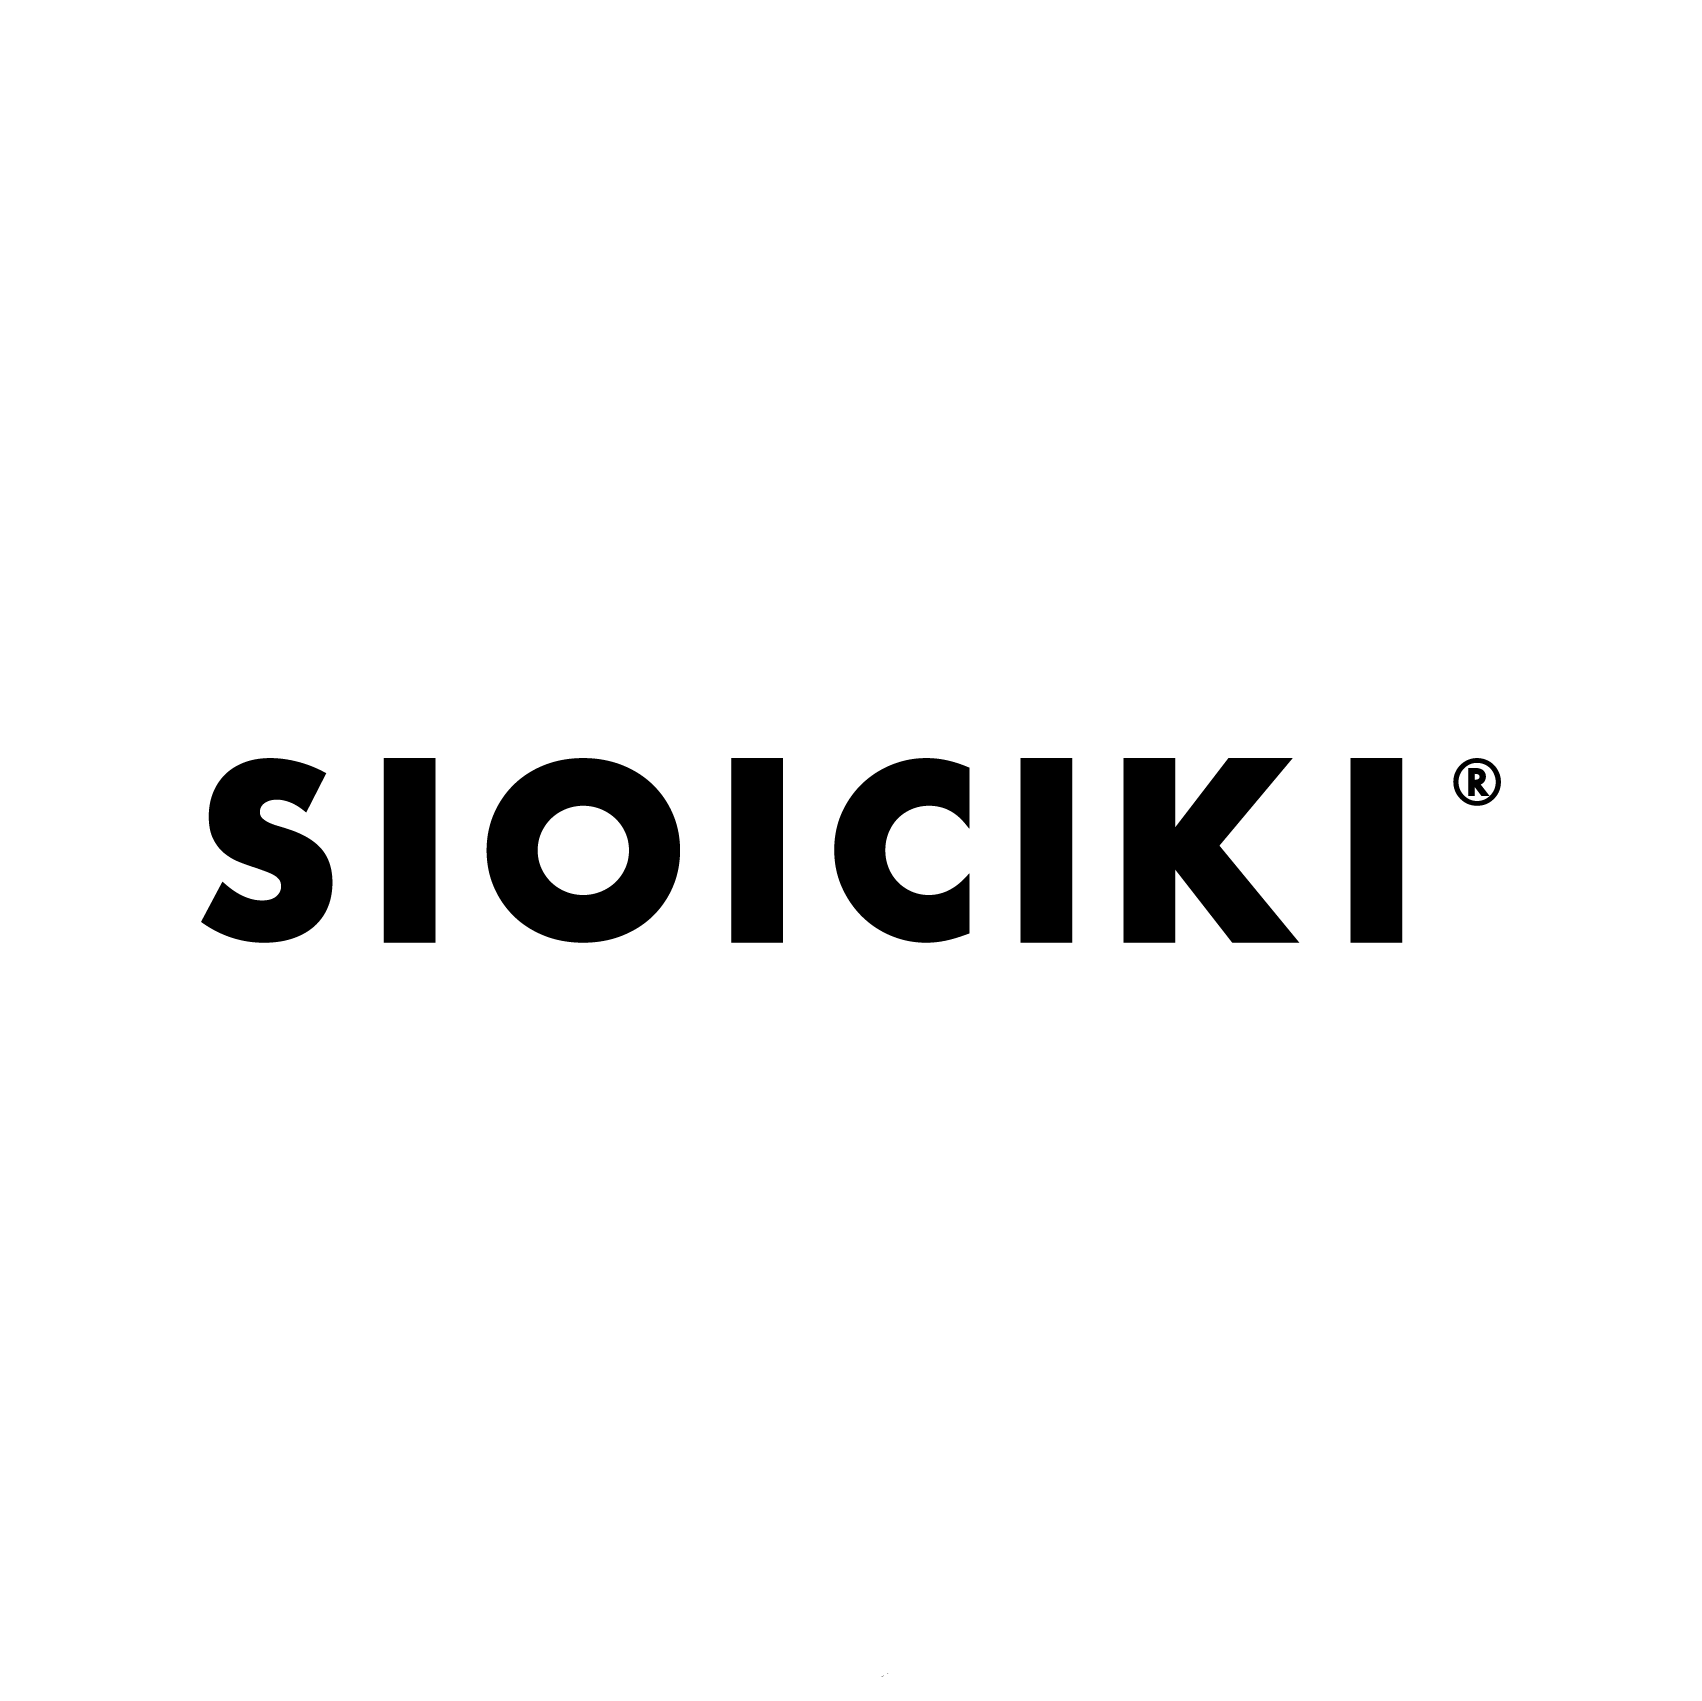 SIOICIKI official